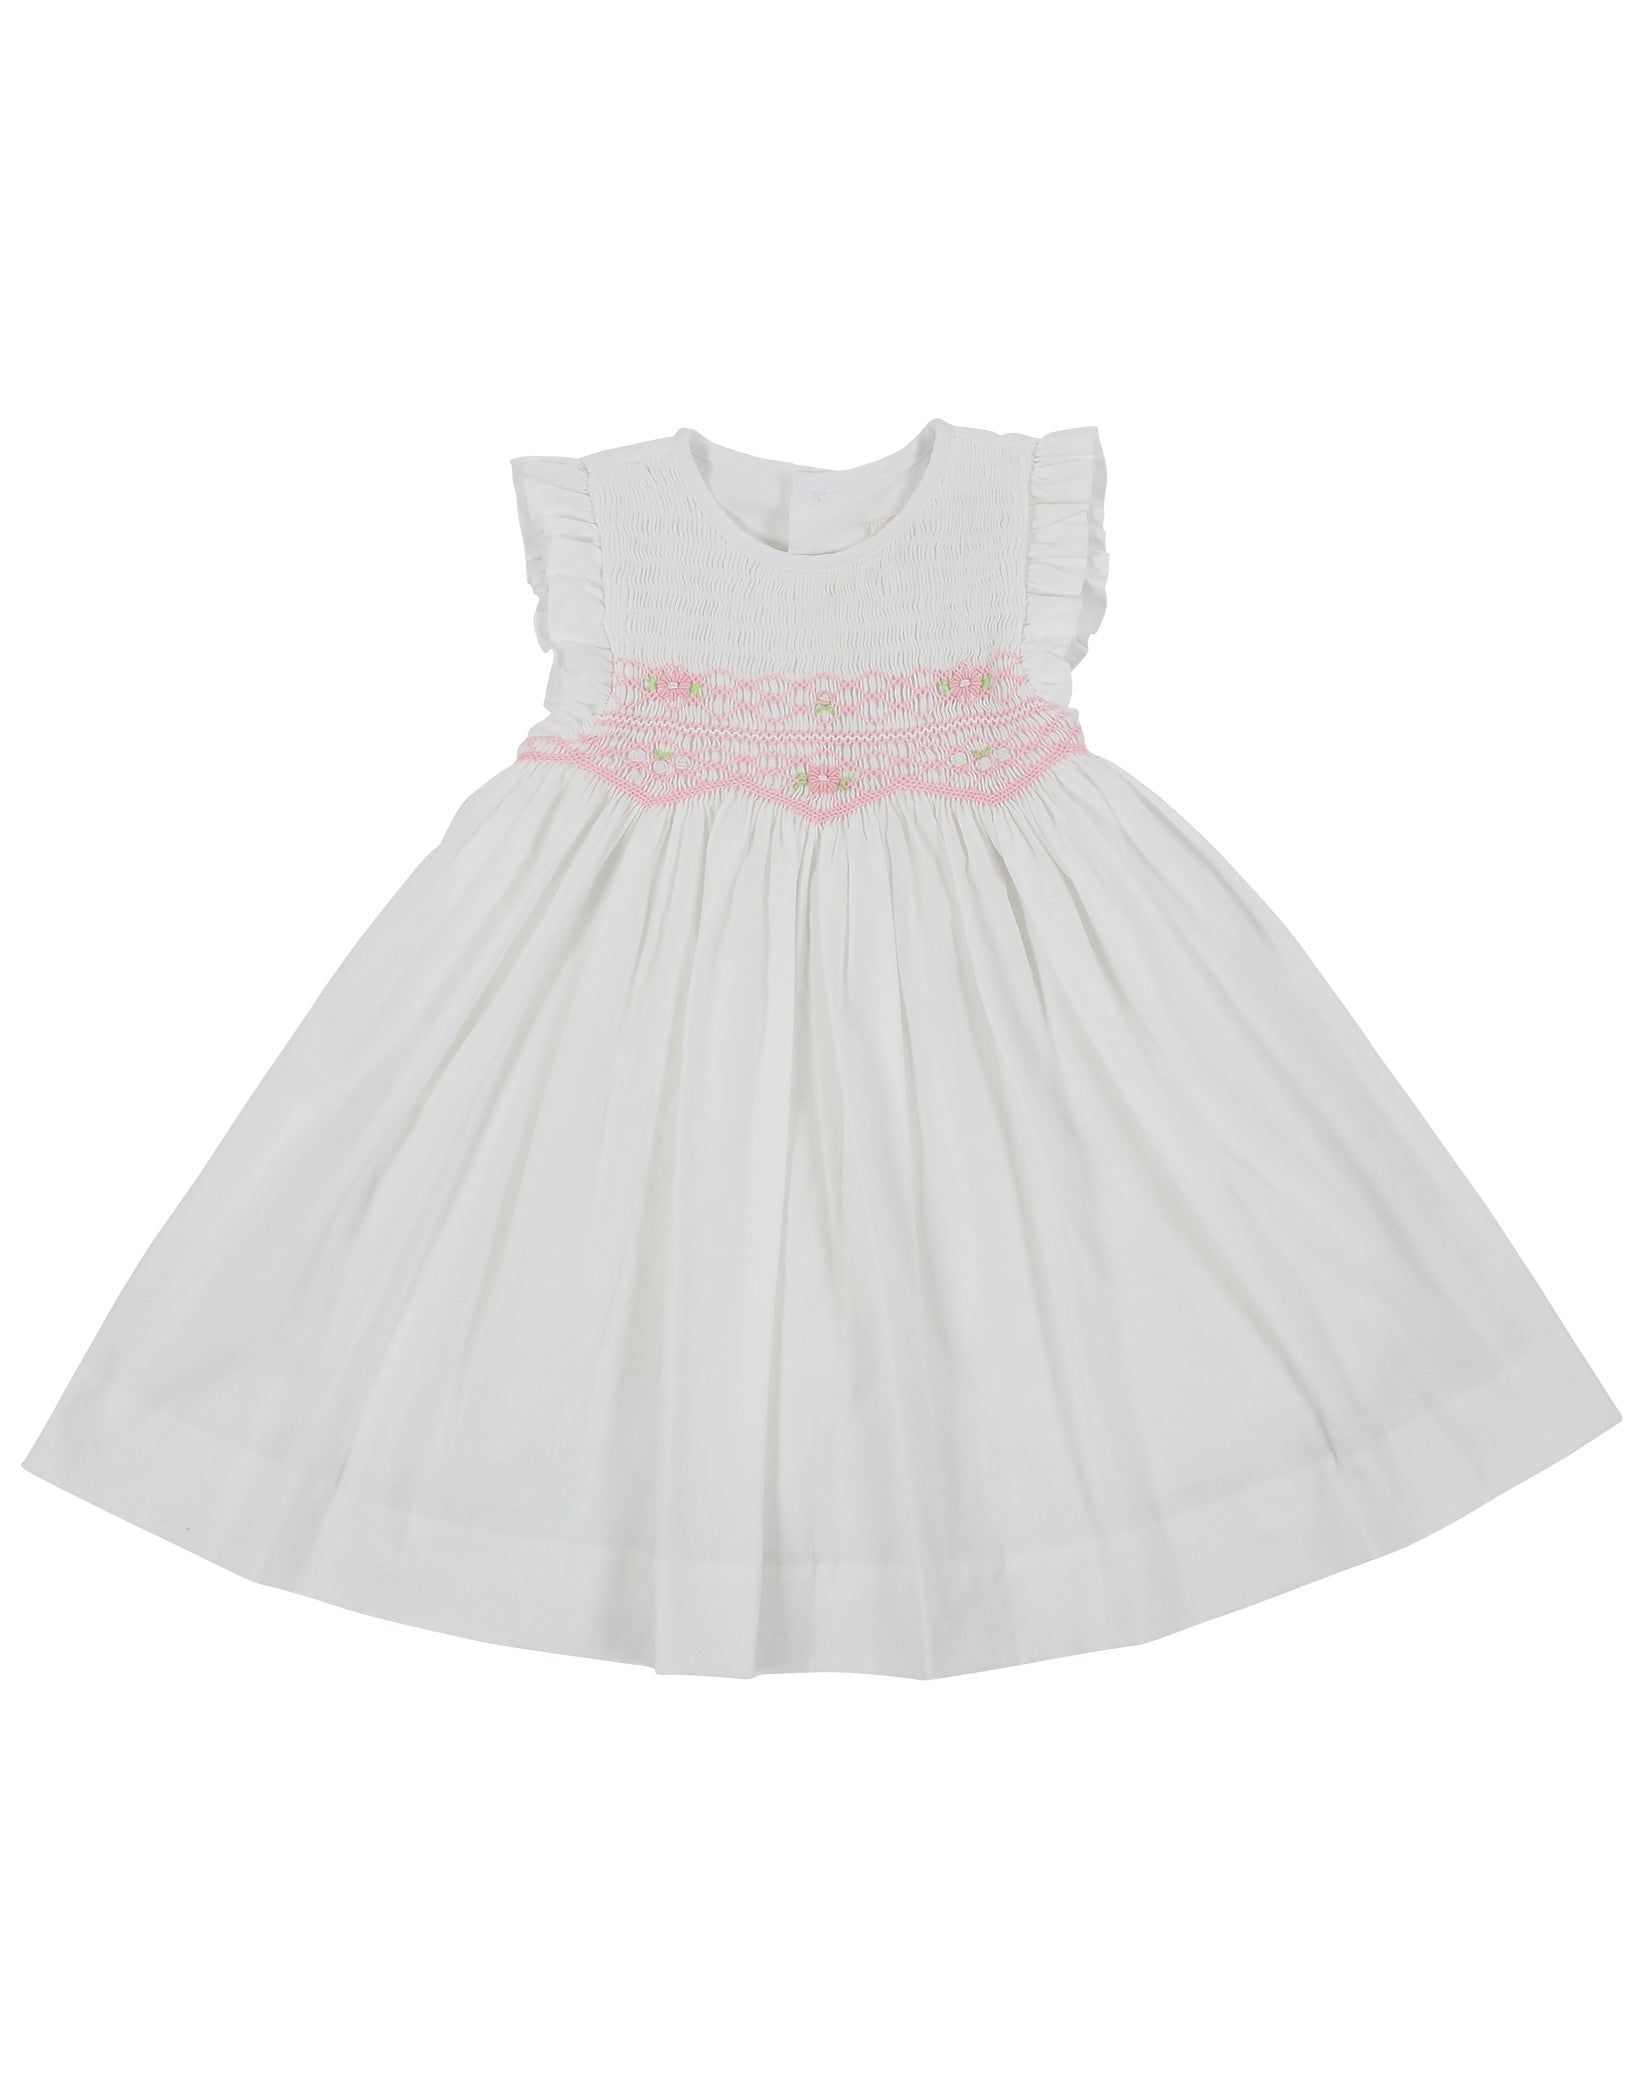 KORANGO Sweet Style Sleeveless Smocked Dress - White